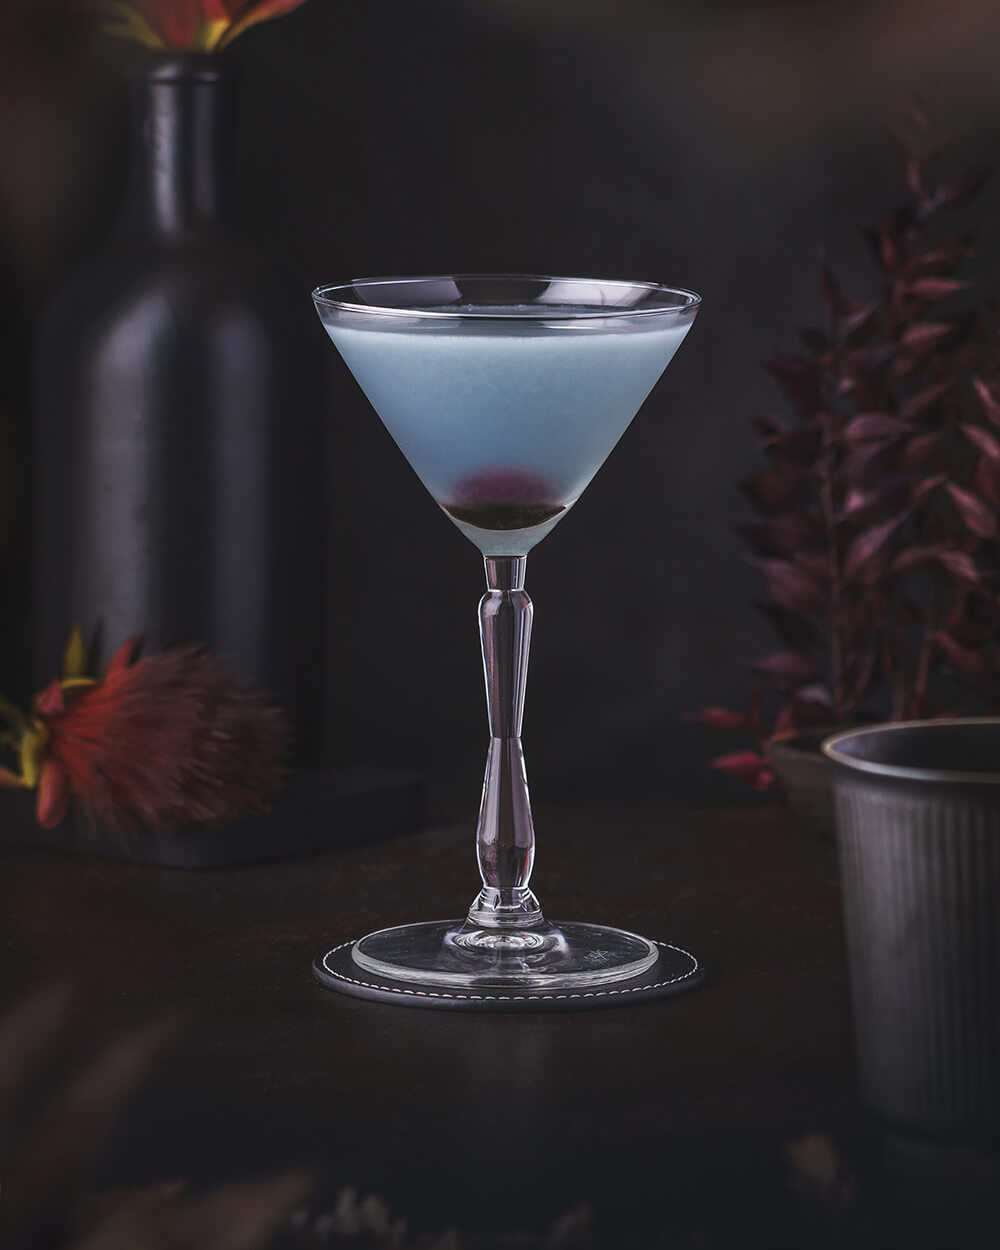 Aviation Cocktail – Sour with violet liqueur